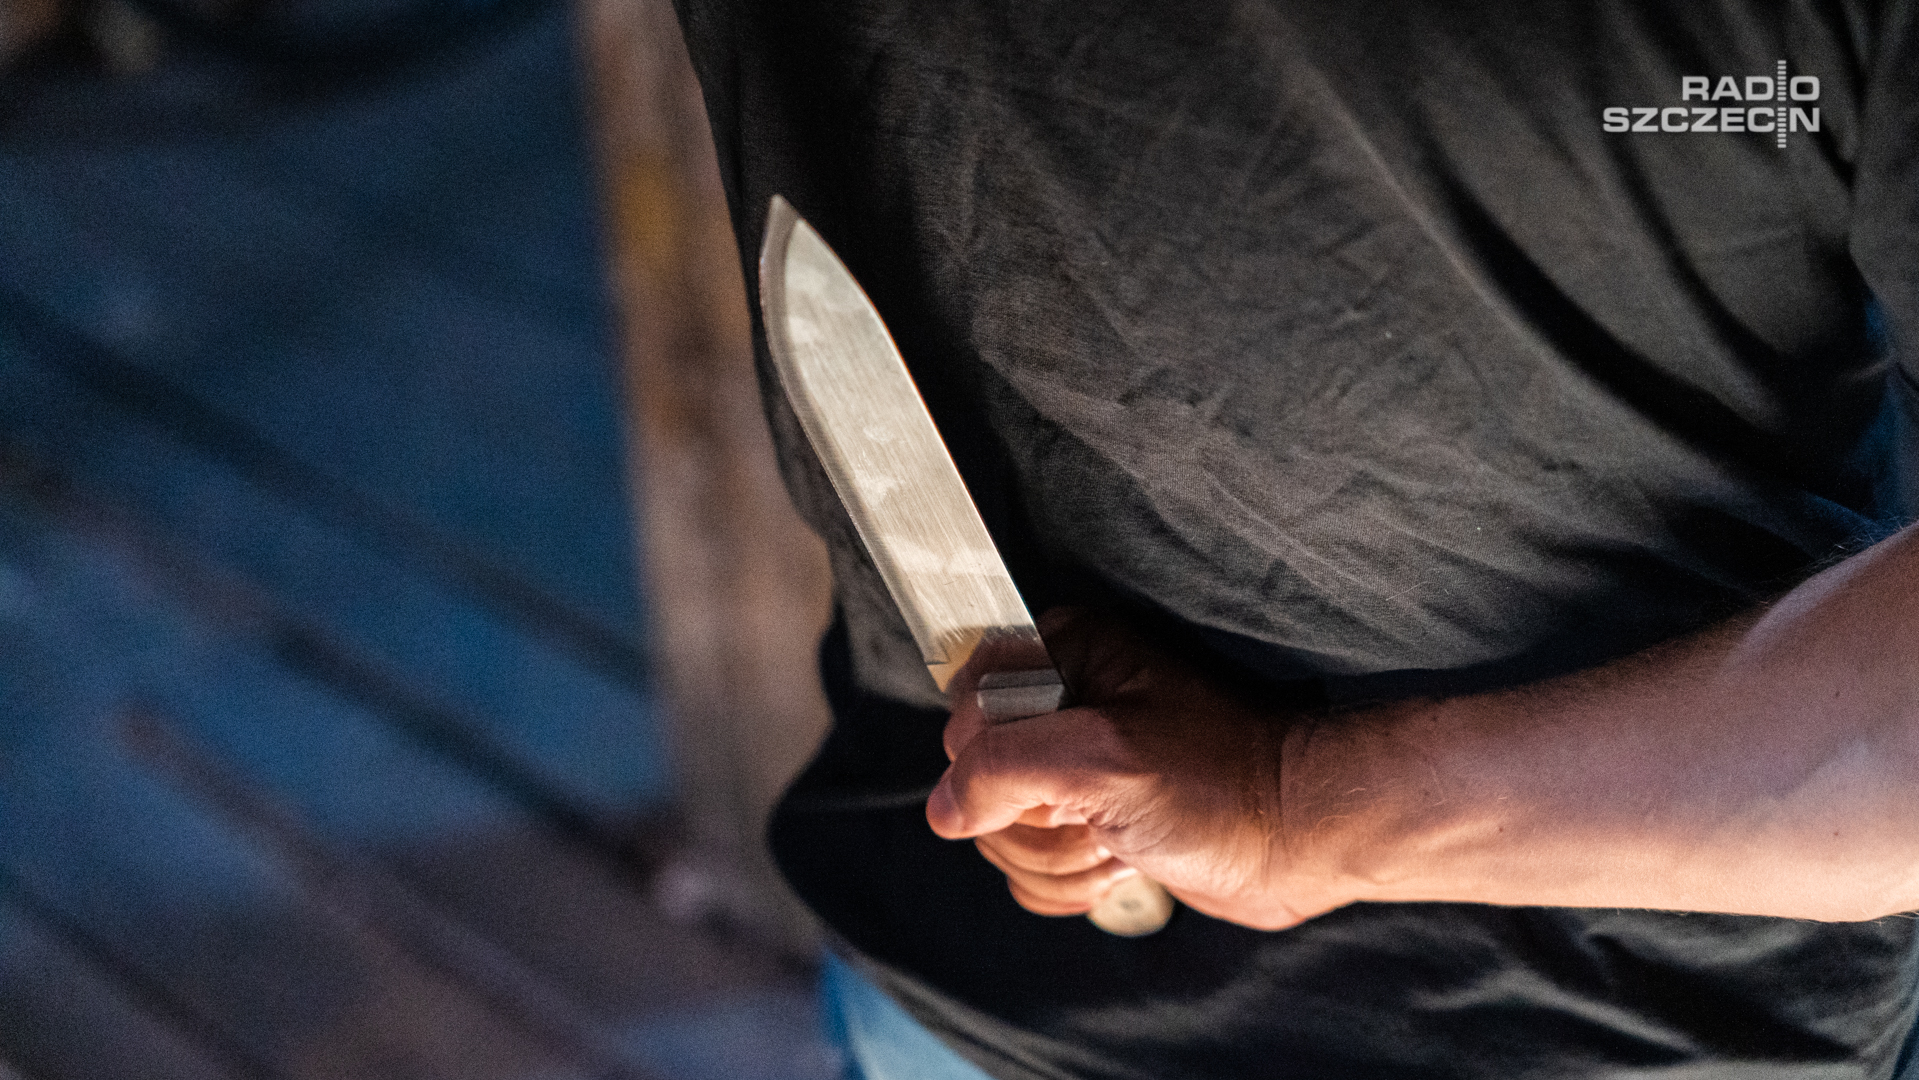 Mężczyzna z nożem w ręku wszedł podczas nabożeństwa do kościoła w Czaplinku.